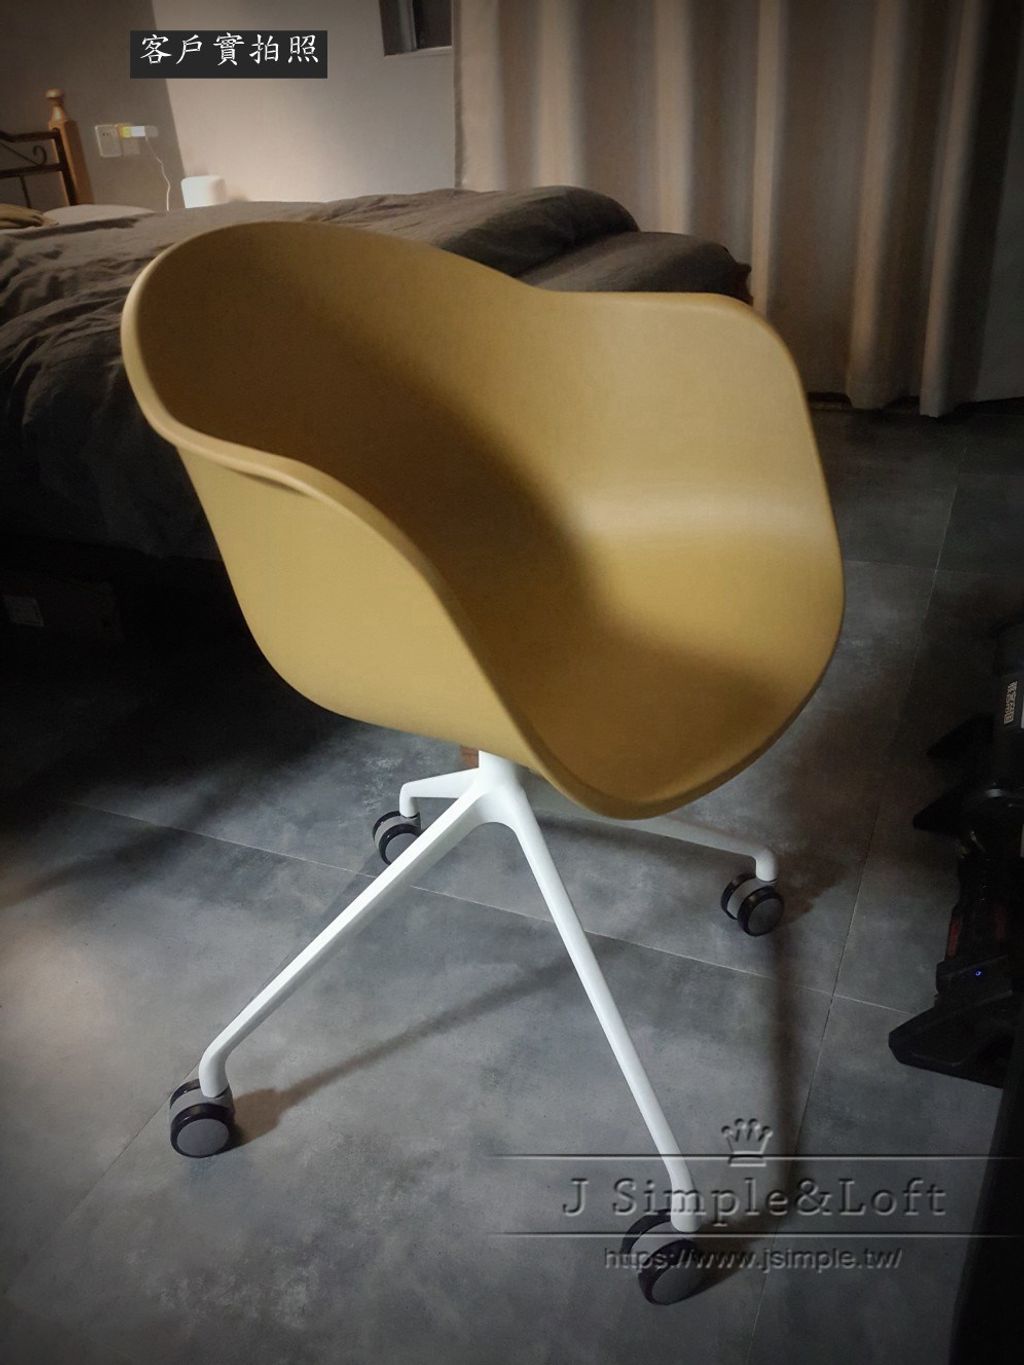 13丹麥設計簡約餐椅BT056 (1).jpg